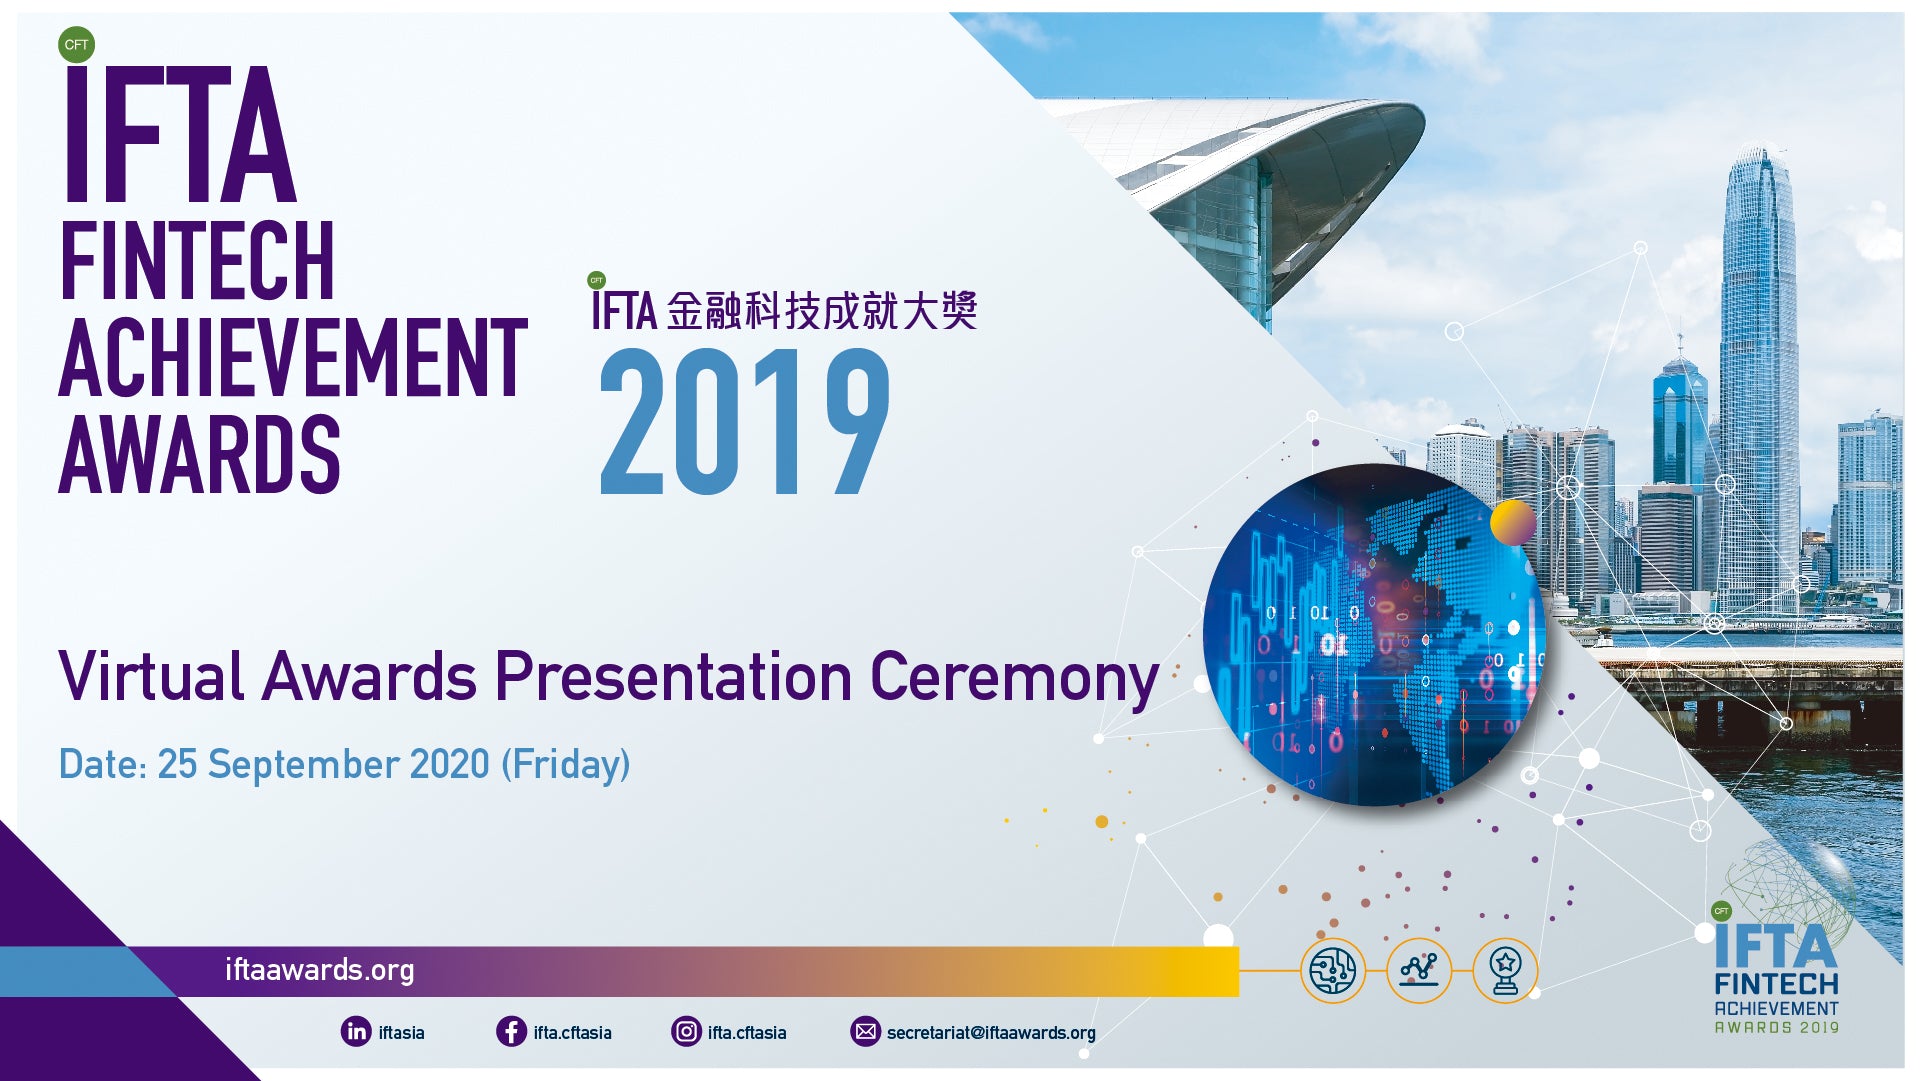 IFTA FinTech Achievement Awards 2019 Press Release